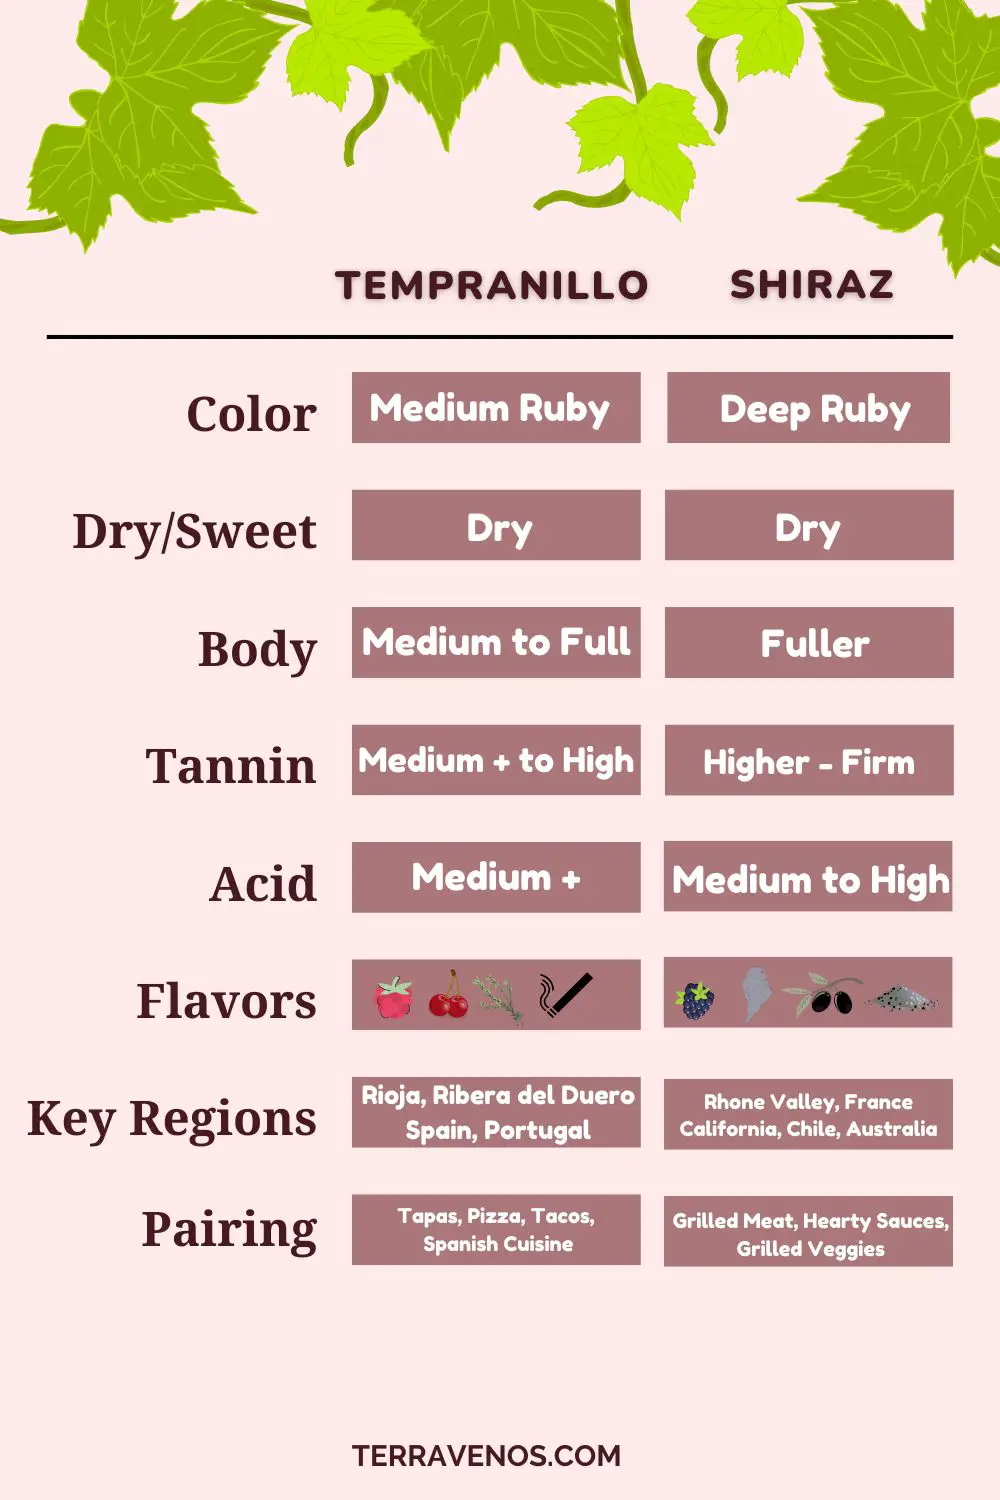 tempranillo-vs-shiraz-wine-comparison-infographic